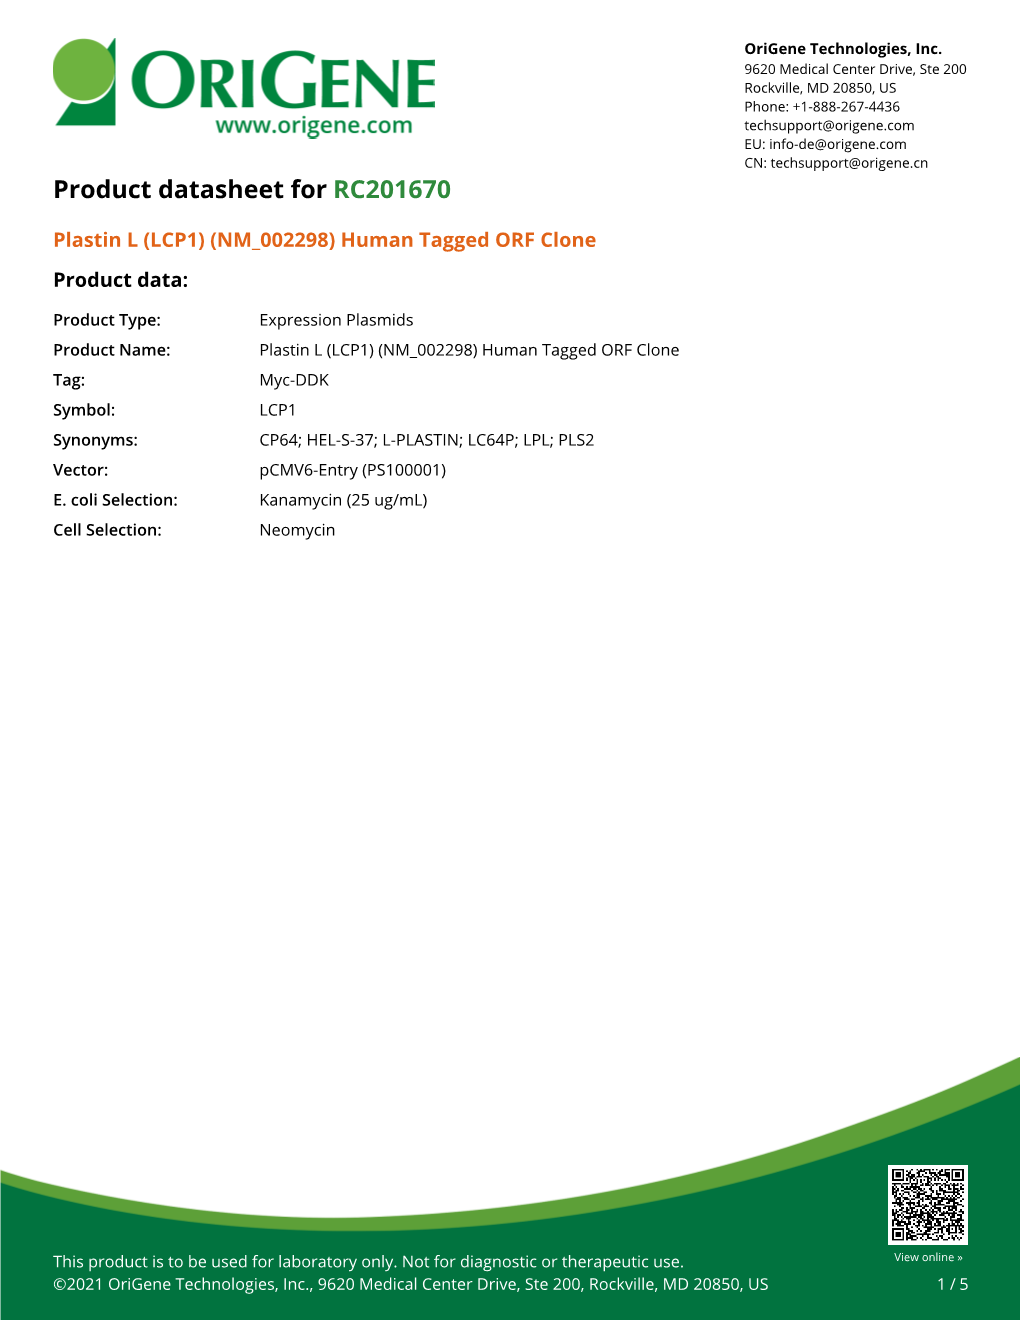 Plastin L (LCP1) (NM 002298) Human Tagged ORF Clone Product Data